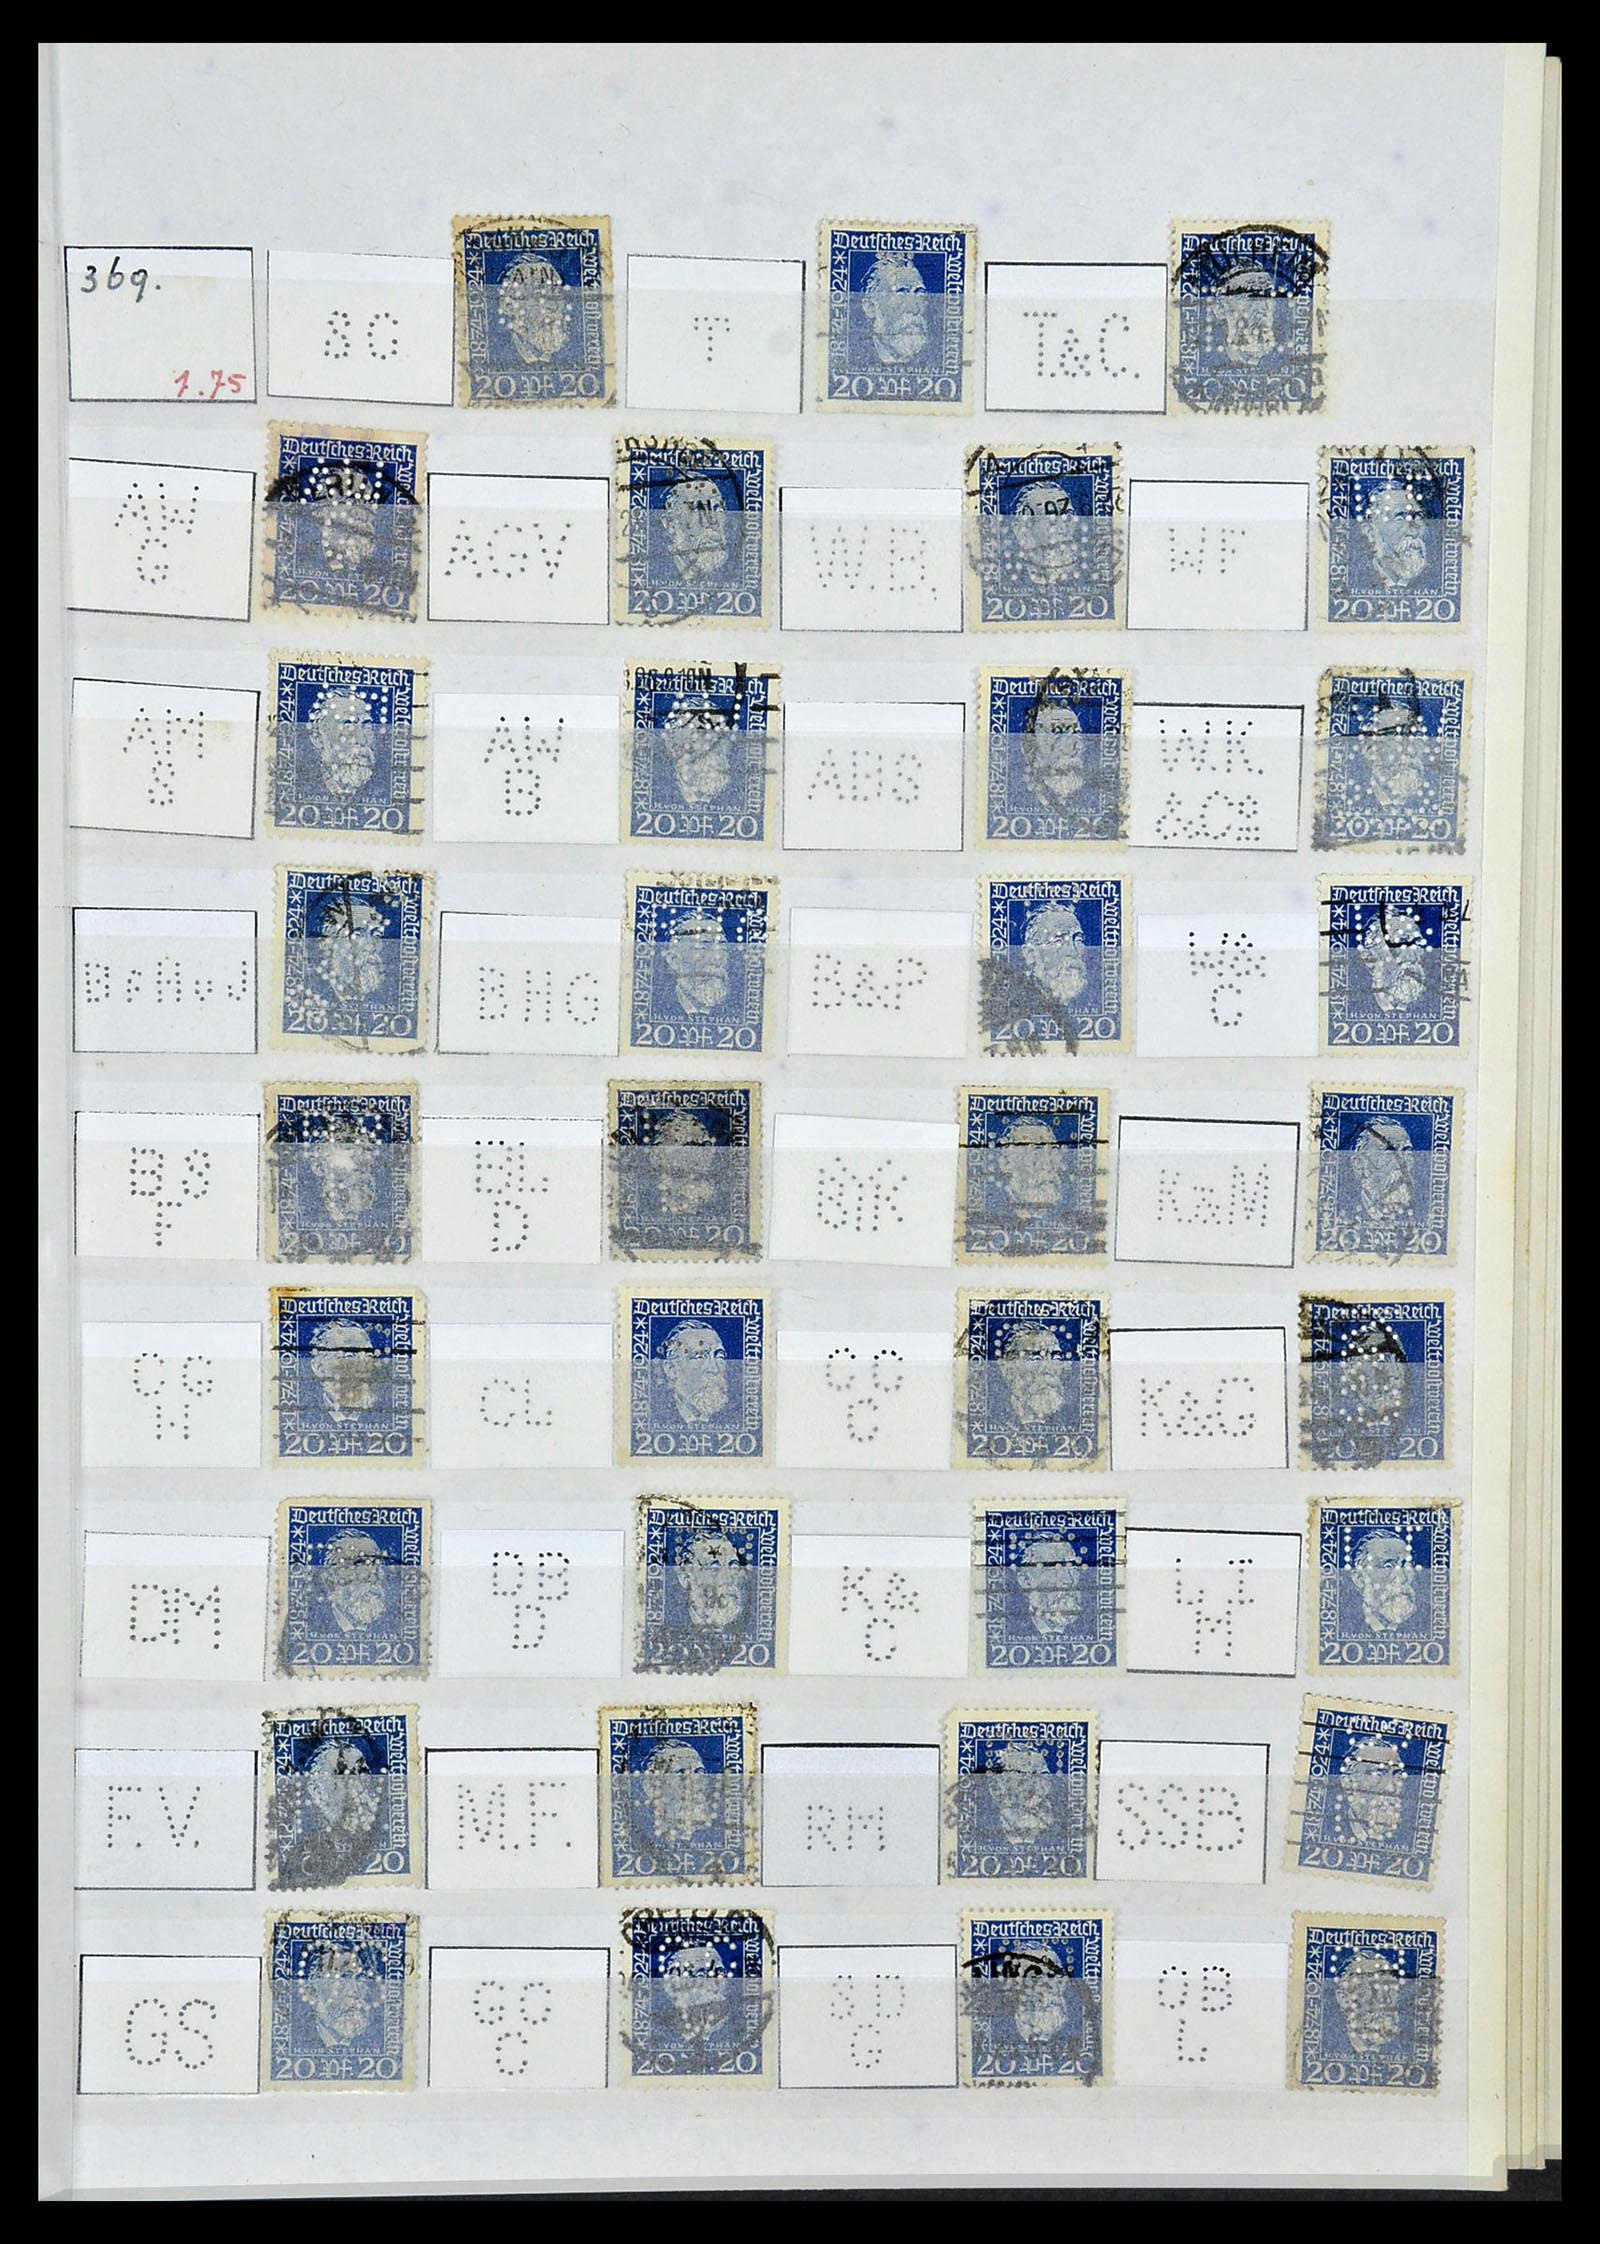 34071 045 - Stamp collection 34071 German Reich perfins 1923-1930.